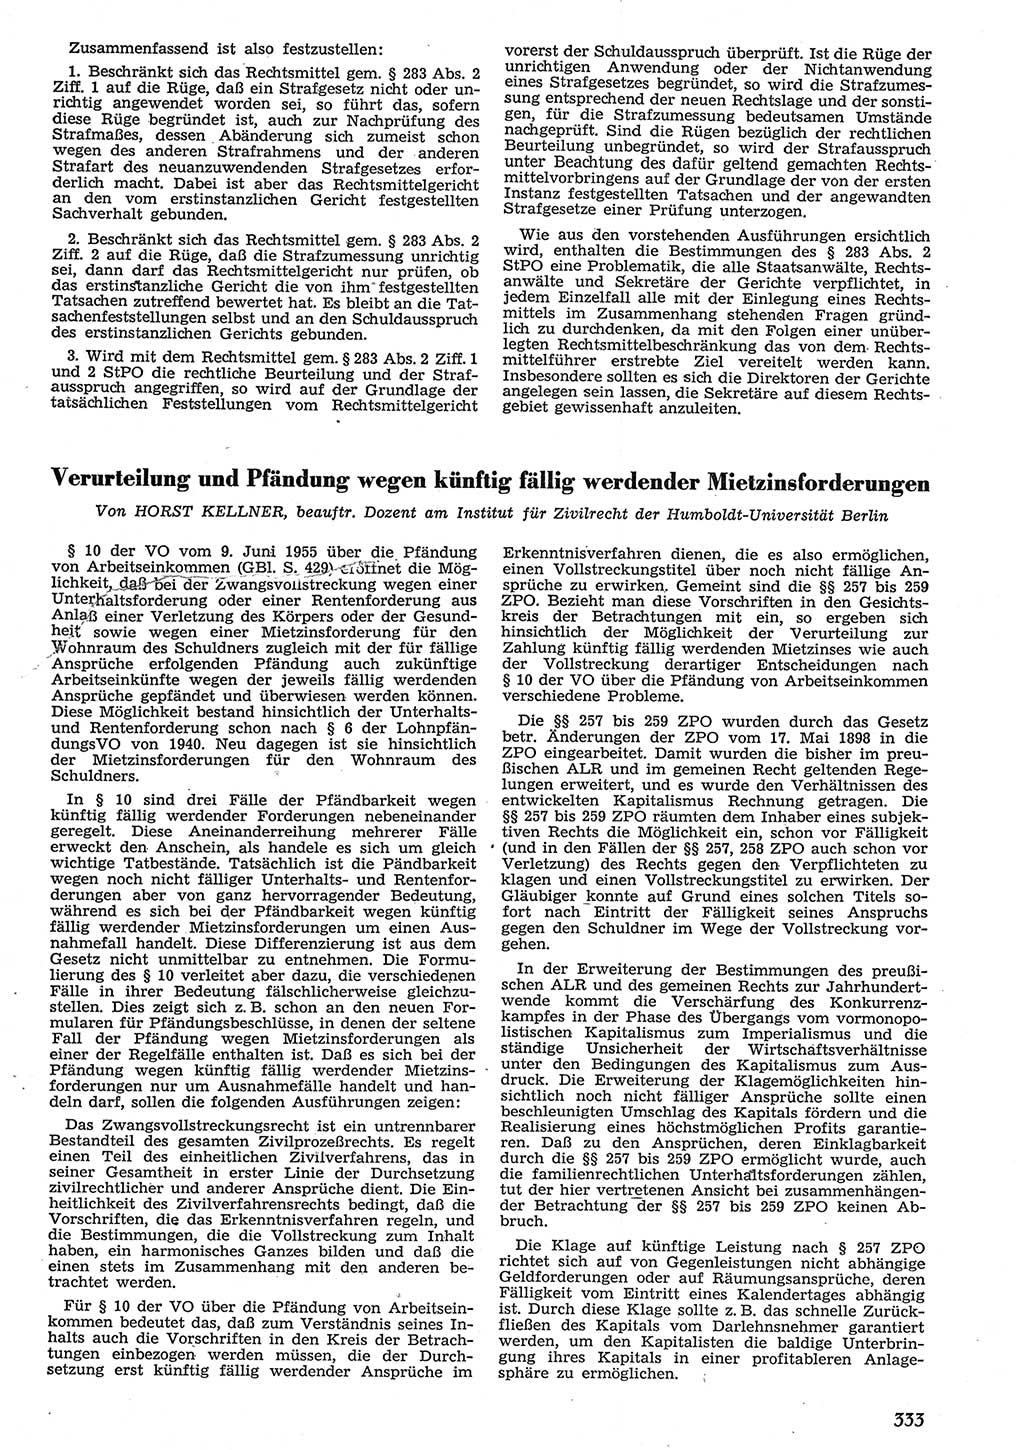 Neue Justiz (NJ), Zeitschrift für Recht und Rechtswissenschaft [Deutsche Demokratische Republik (DDR)], 10. Jahrgang 1956, Seite 333 (NJ DDR 1956, S. 333)